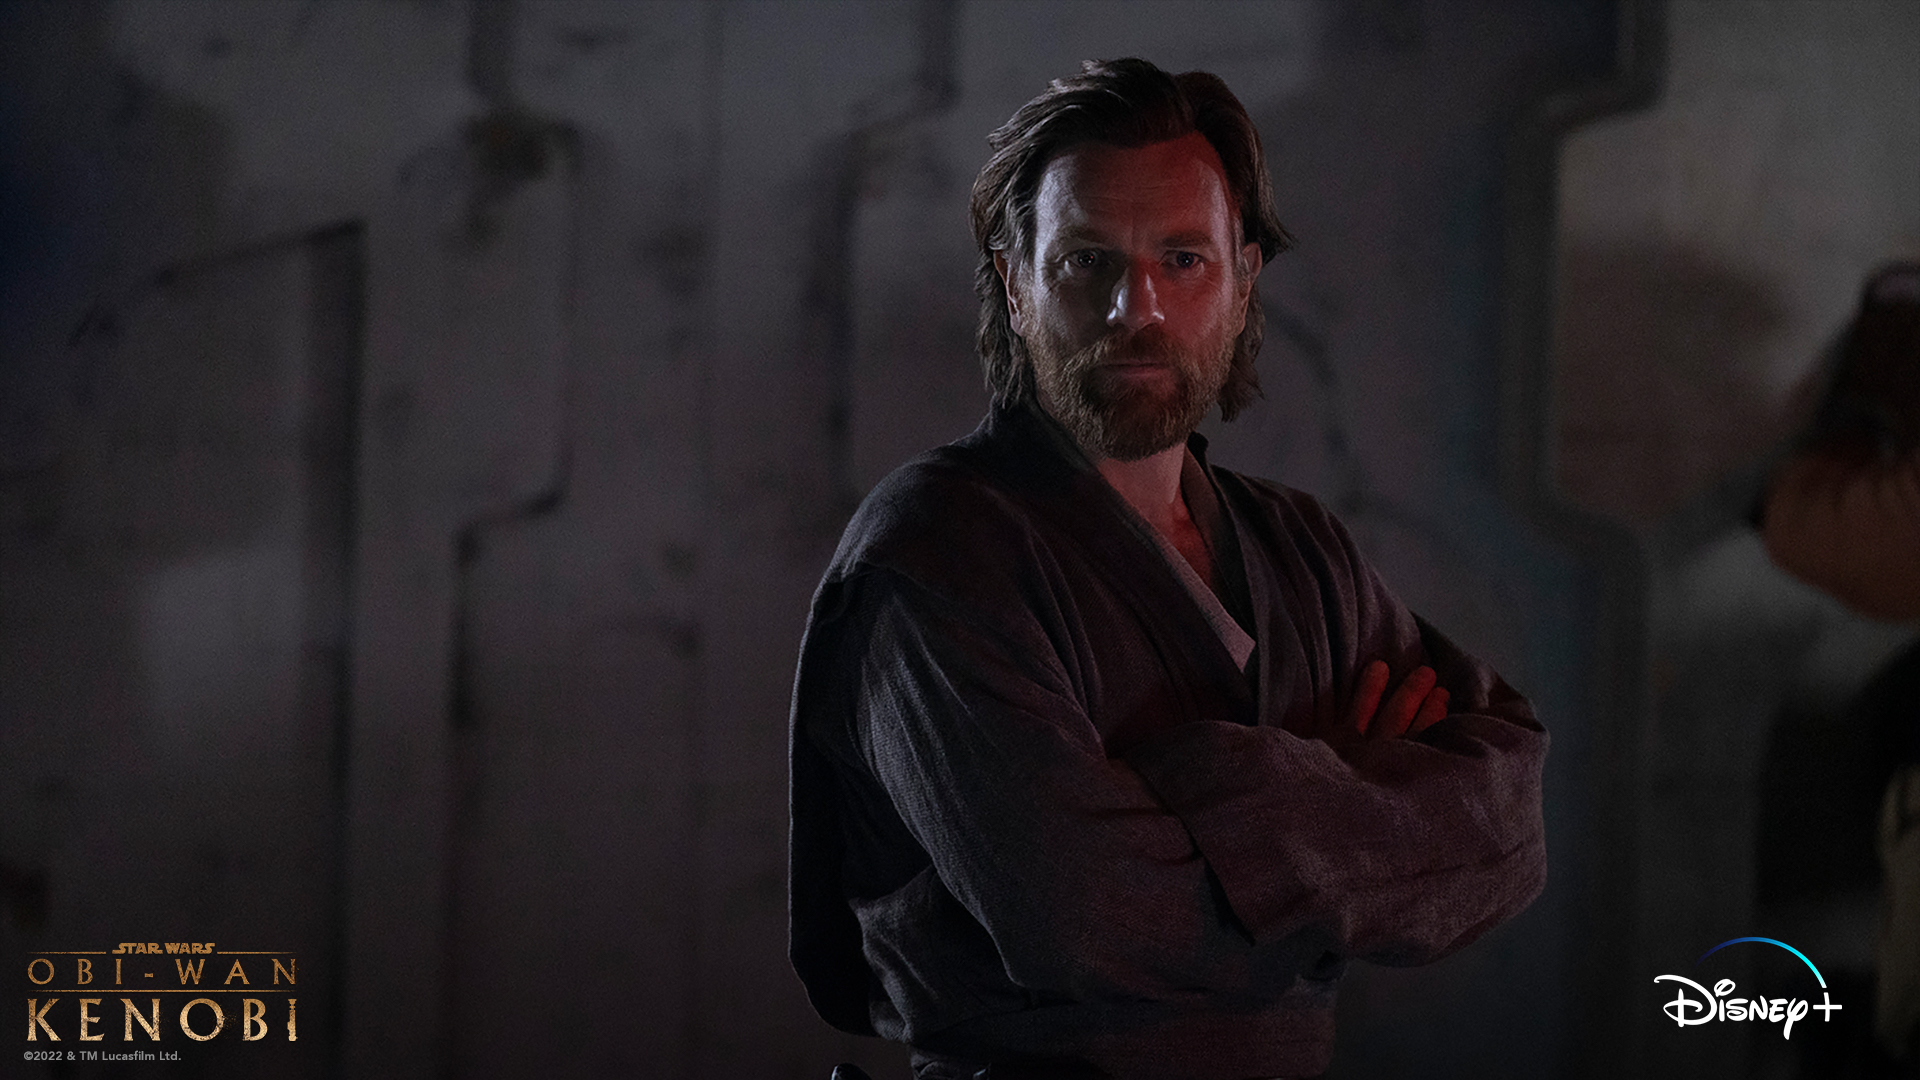 3 lessons on leadership from 'Obi-Wan Kenobi'